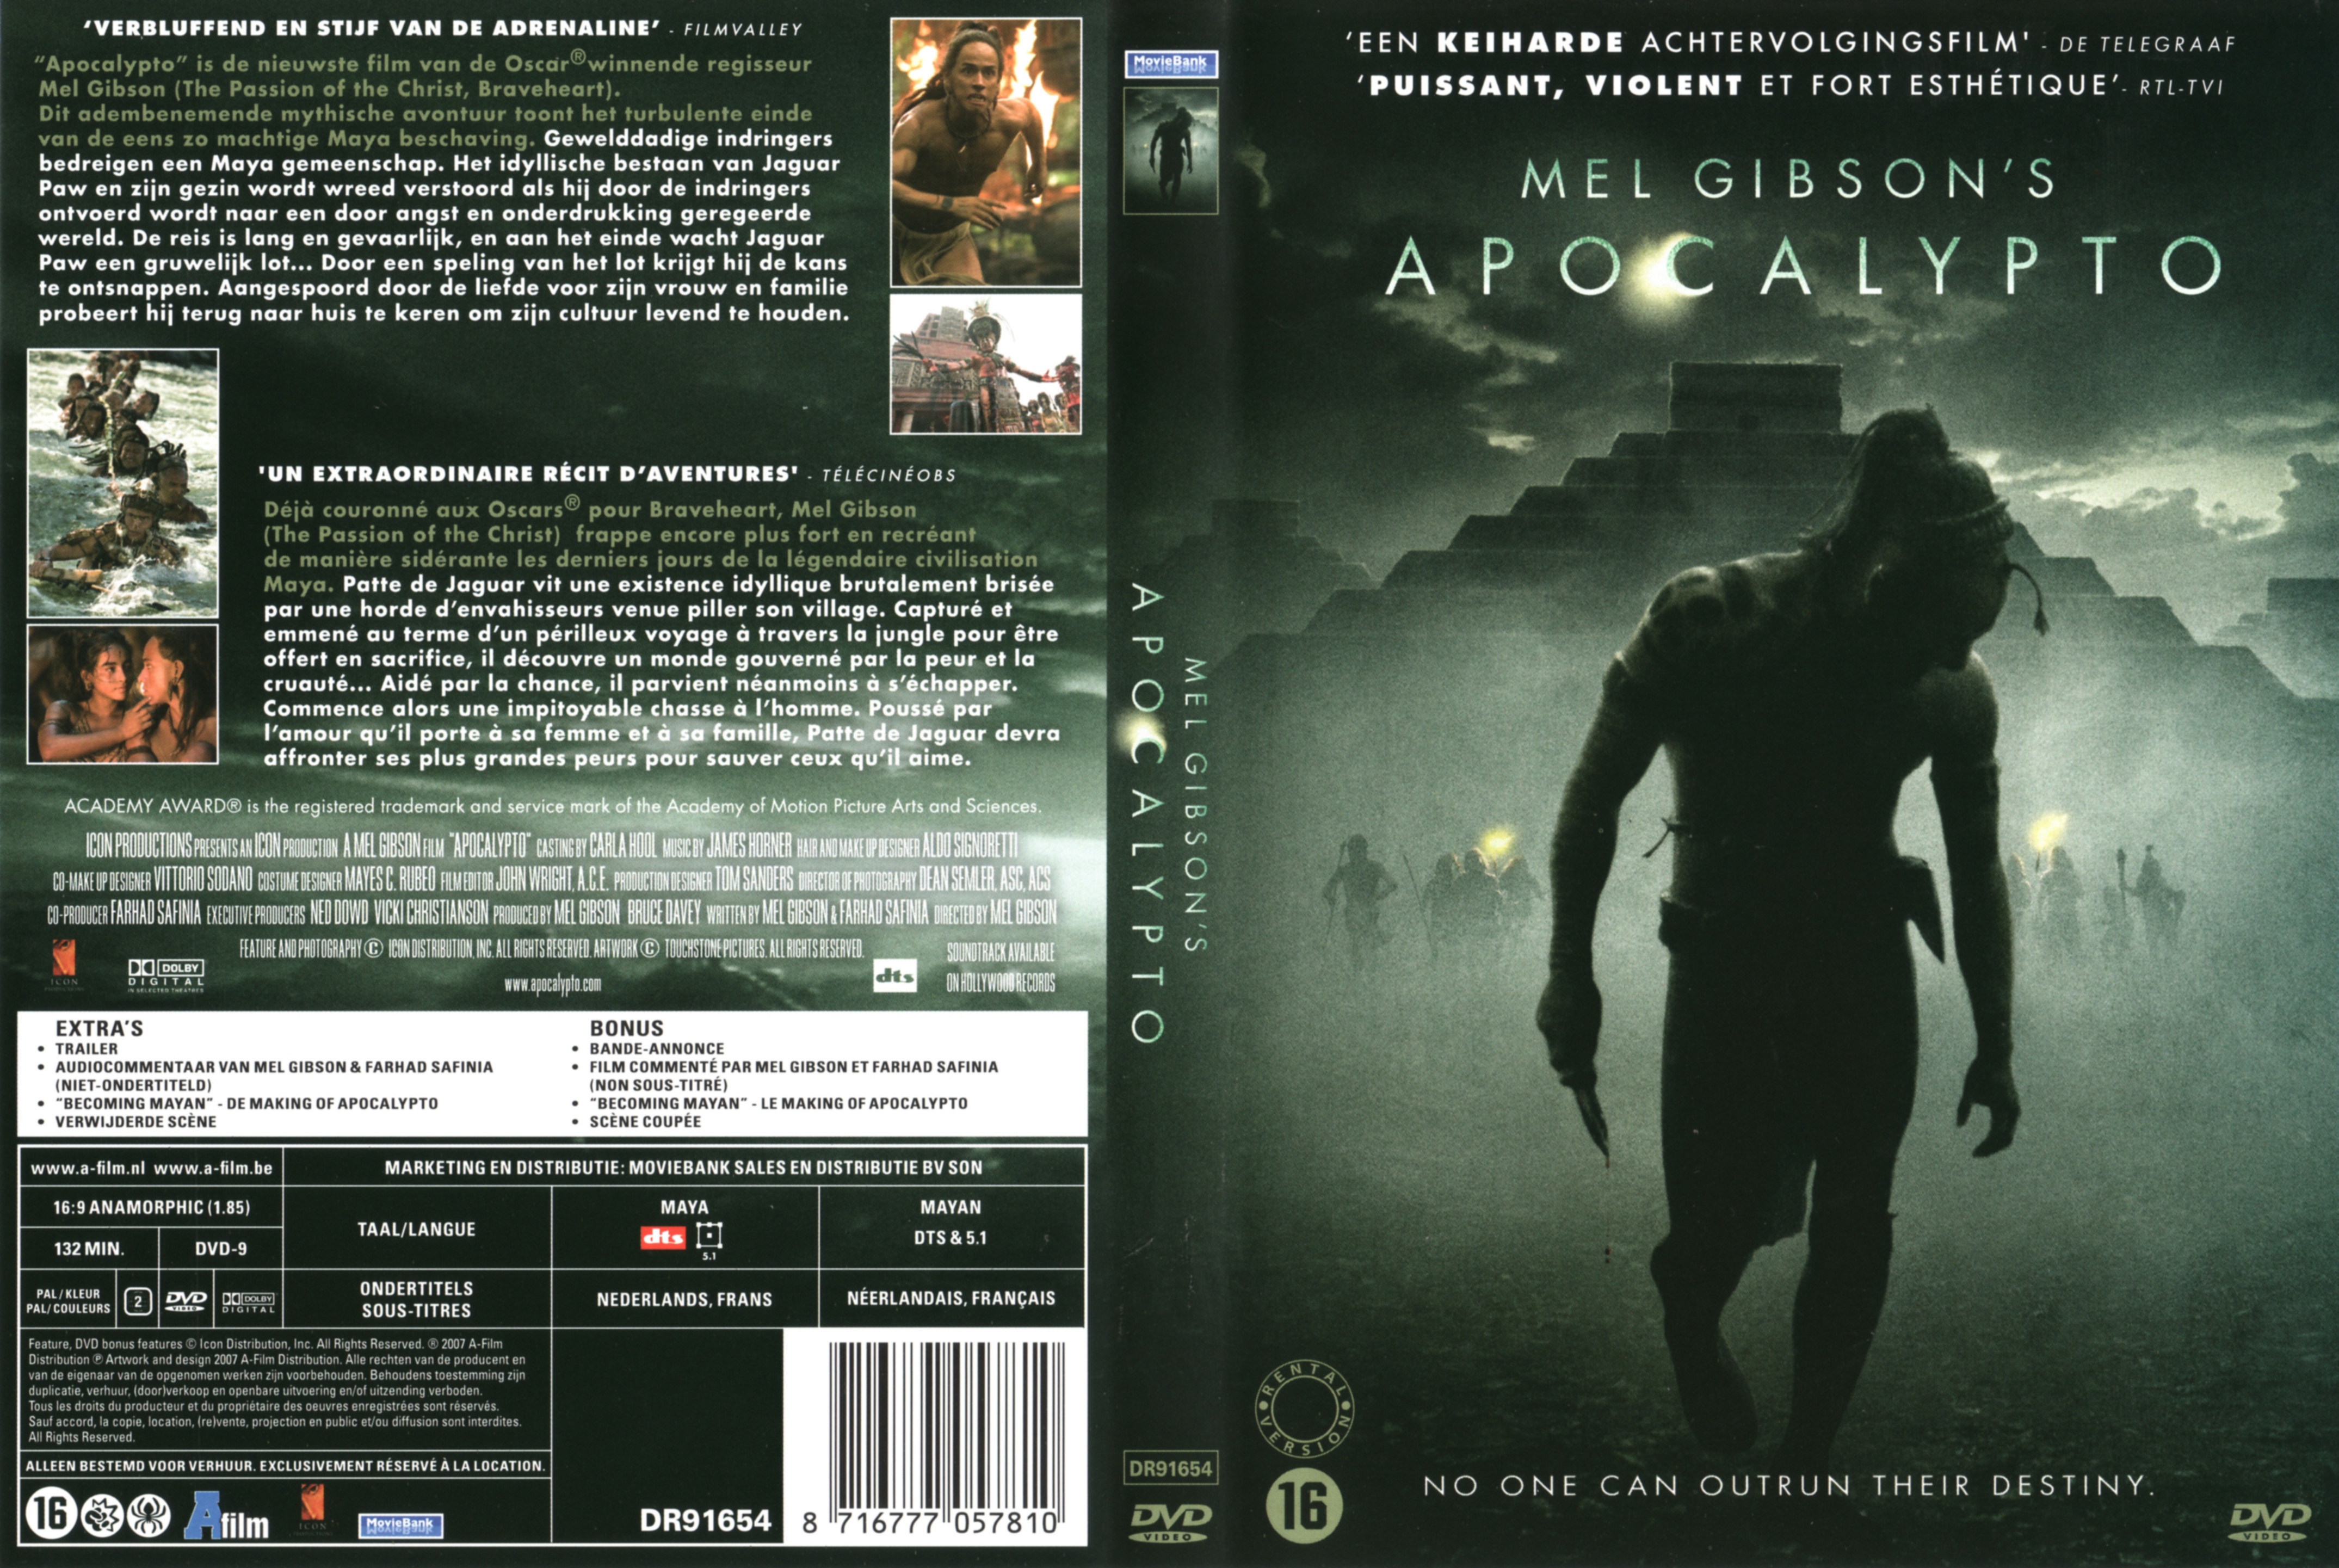 Jaquette DVD Apocalypto v2